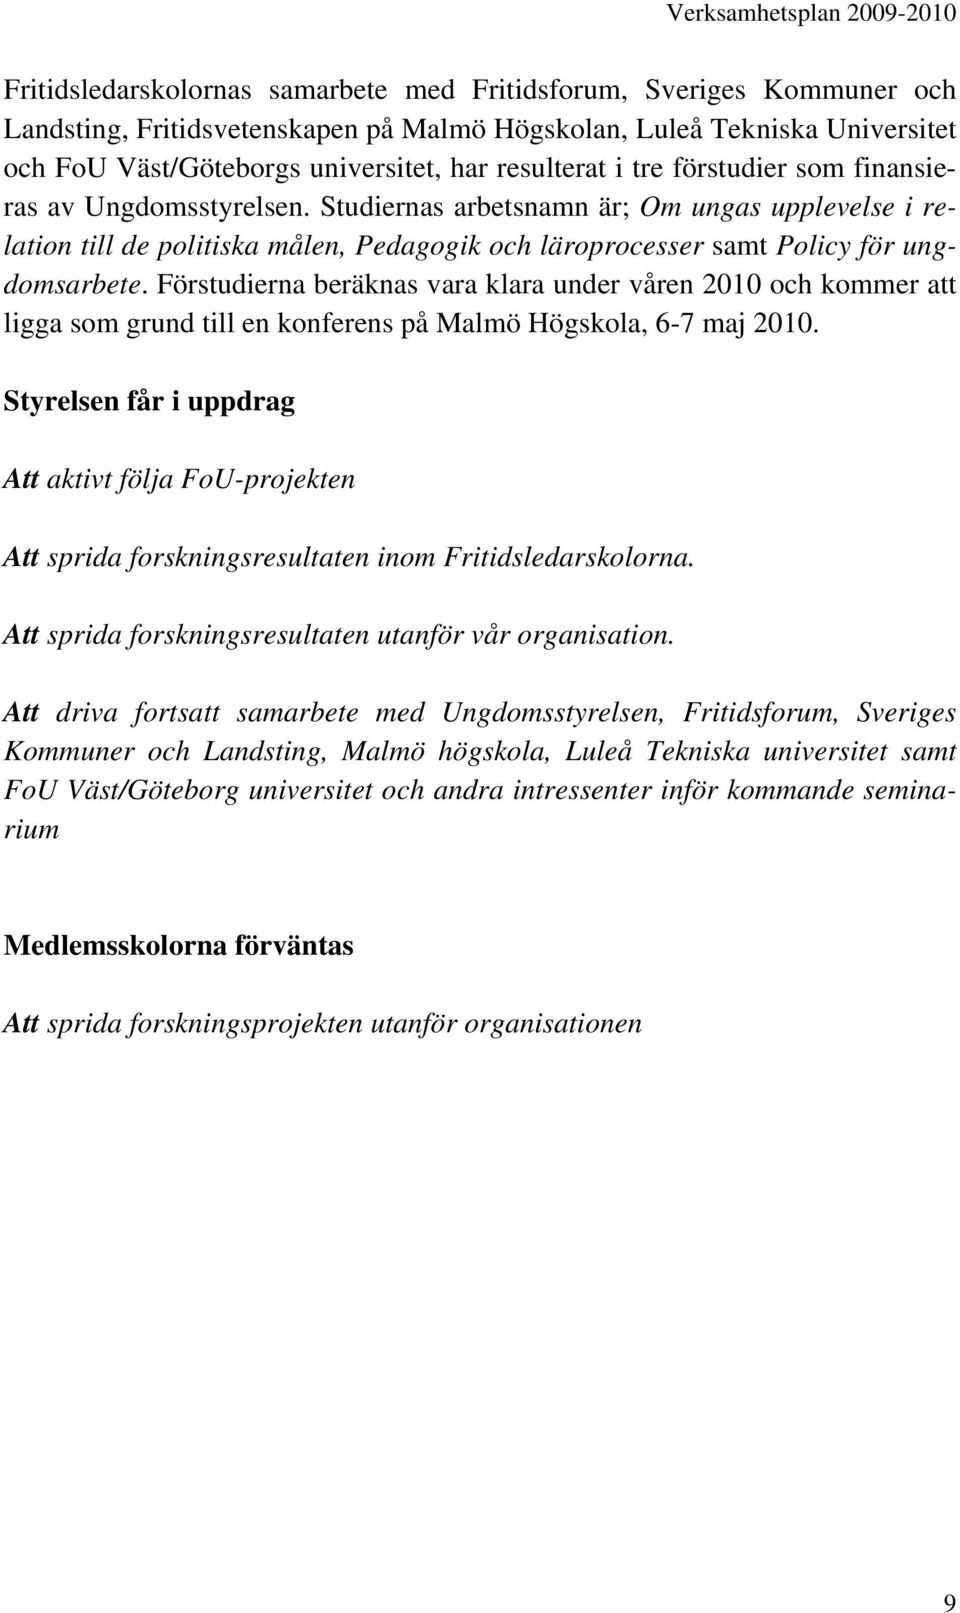 Förstudierna beräknas vara klara under våren 2010 och kommer att ligga som grund till en konferens på Malmö Högskola, 6-7 maj 2010.